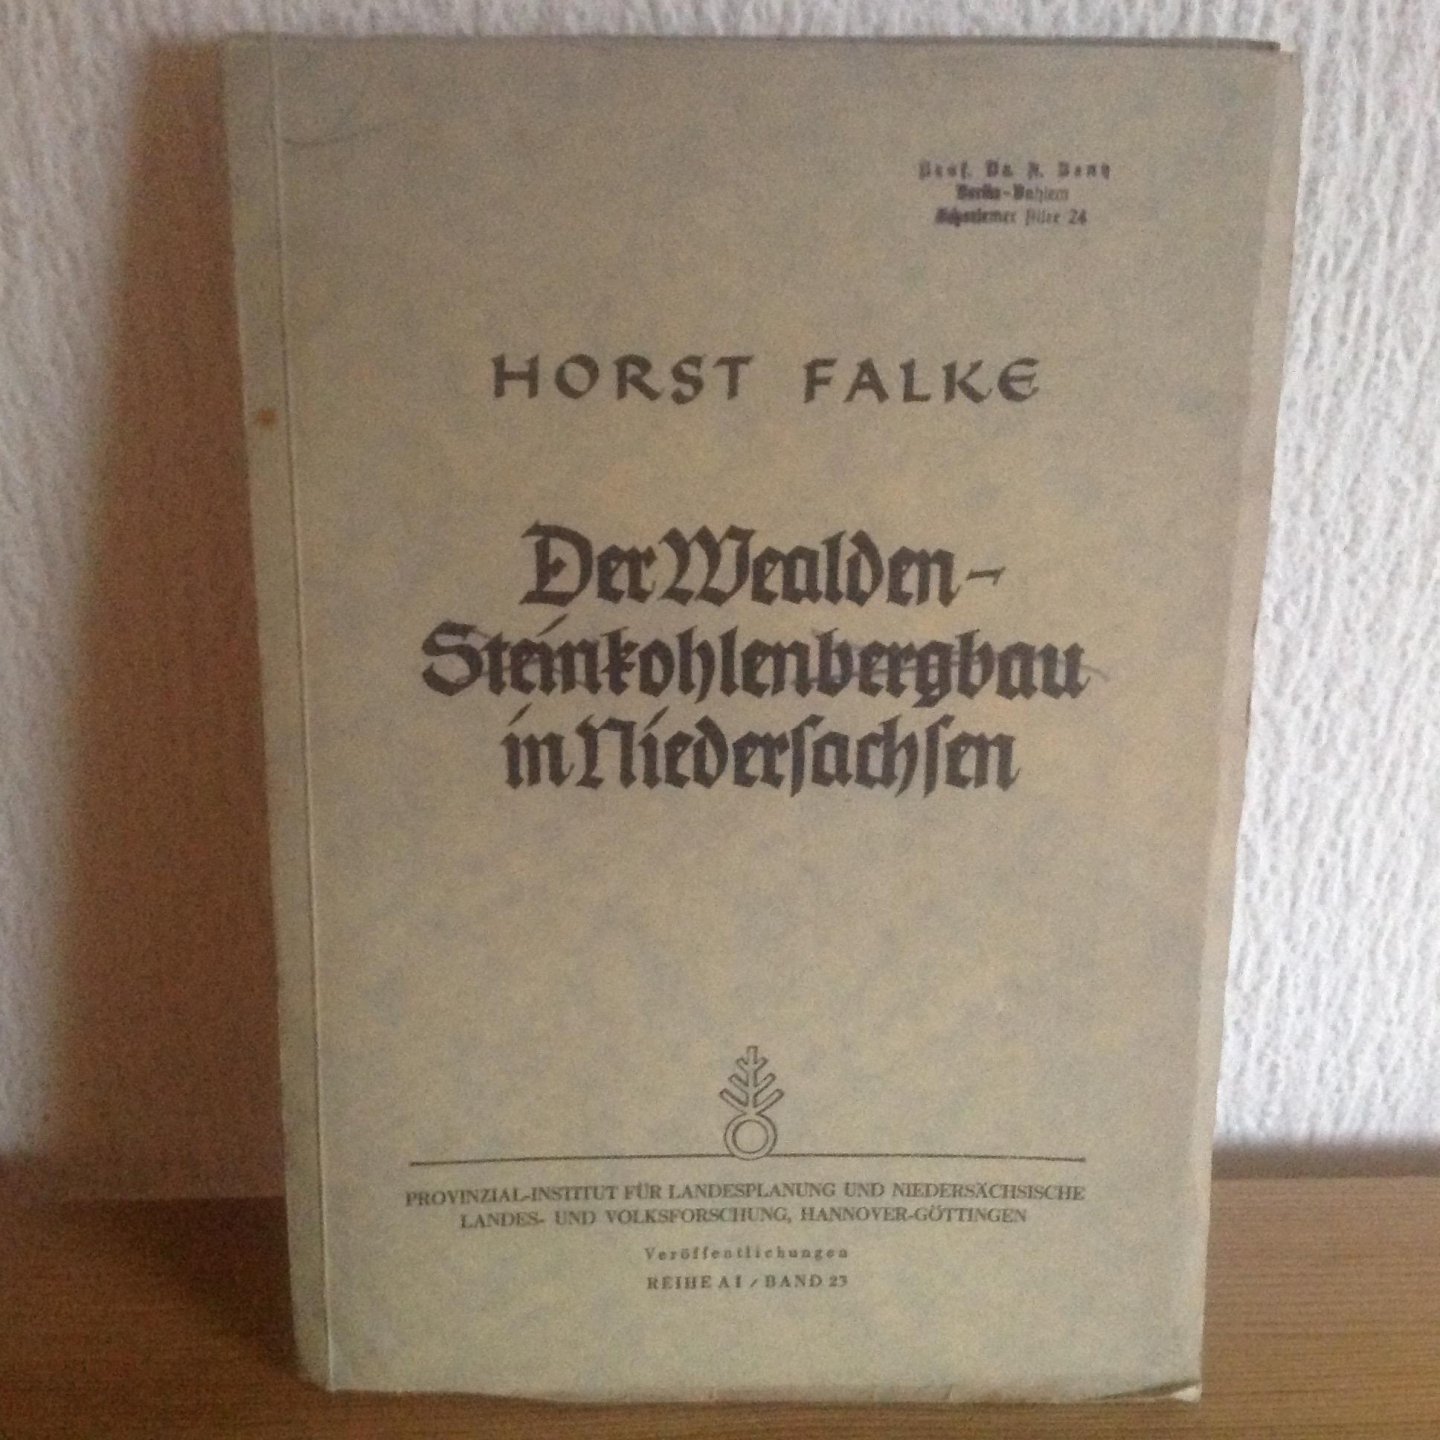 Horst falke - Der Wealden Steinkohlenbergbau in Niedersachsen